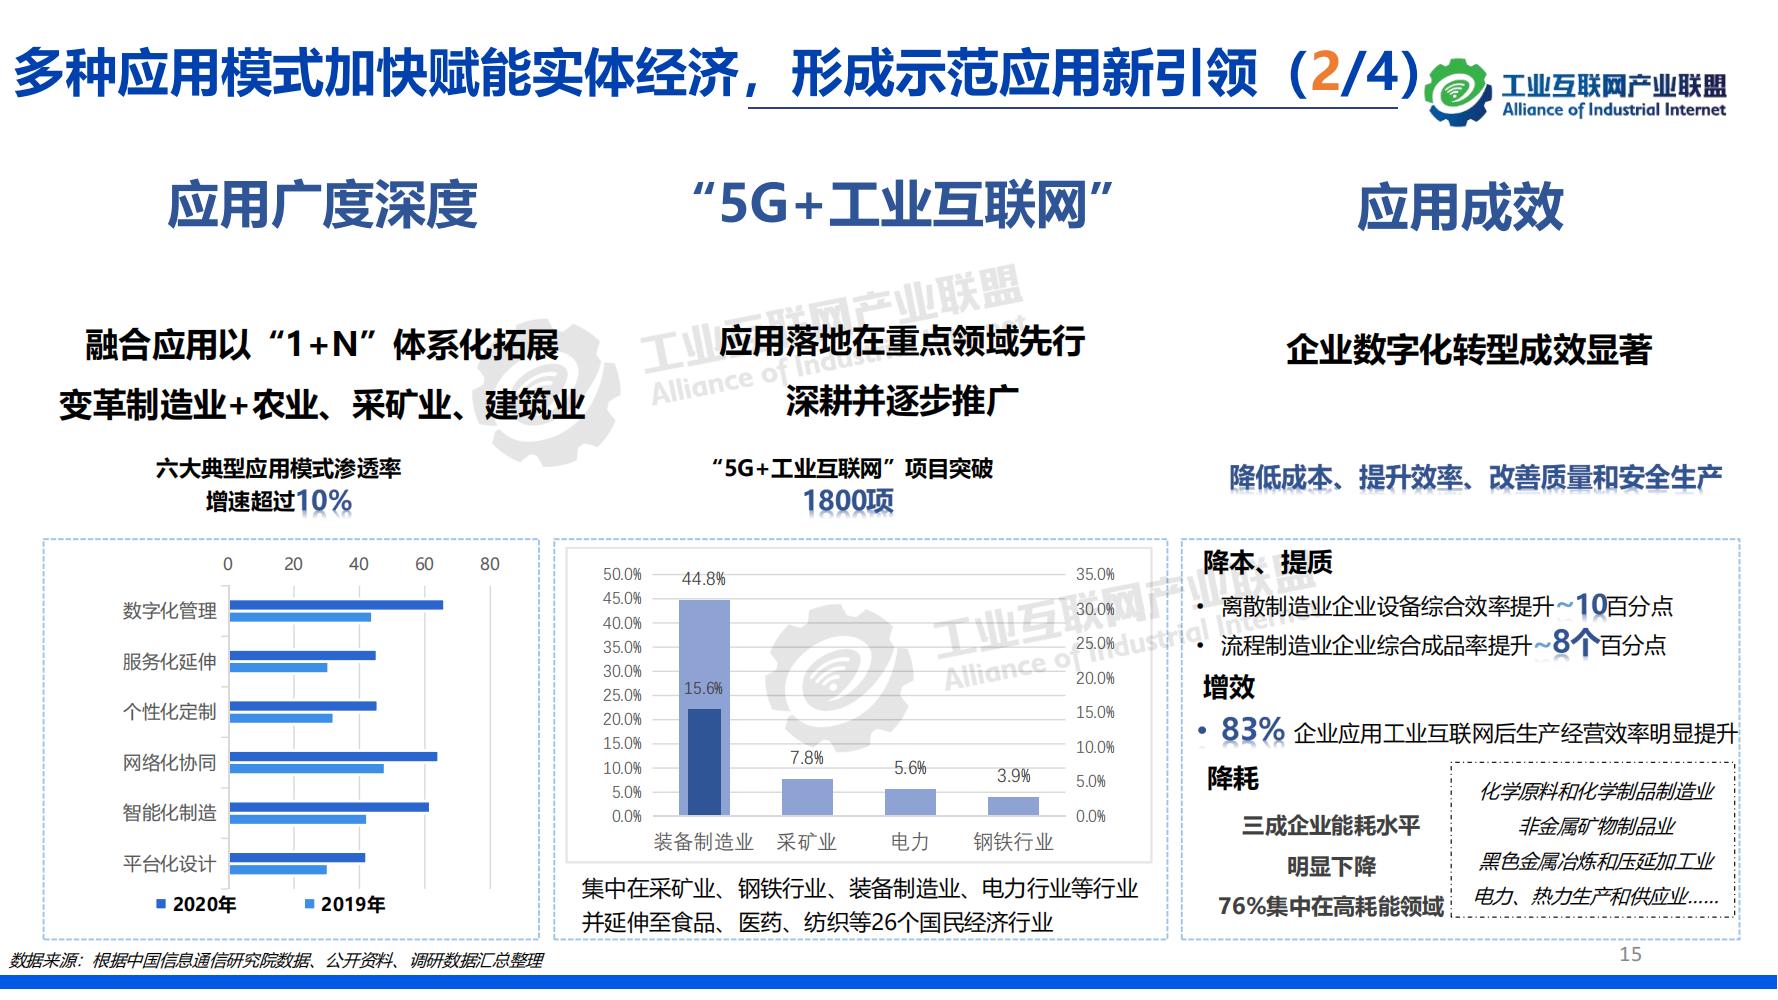 1-中国工业互联网发展成效评估报告-水印_14.jpg